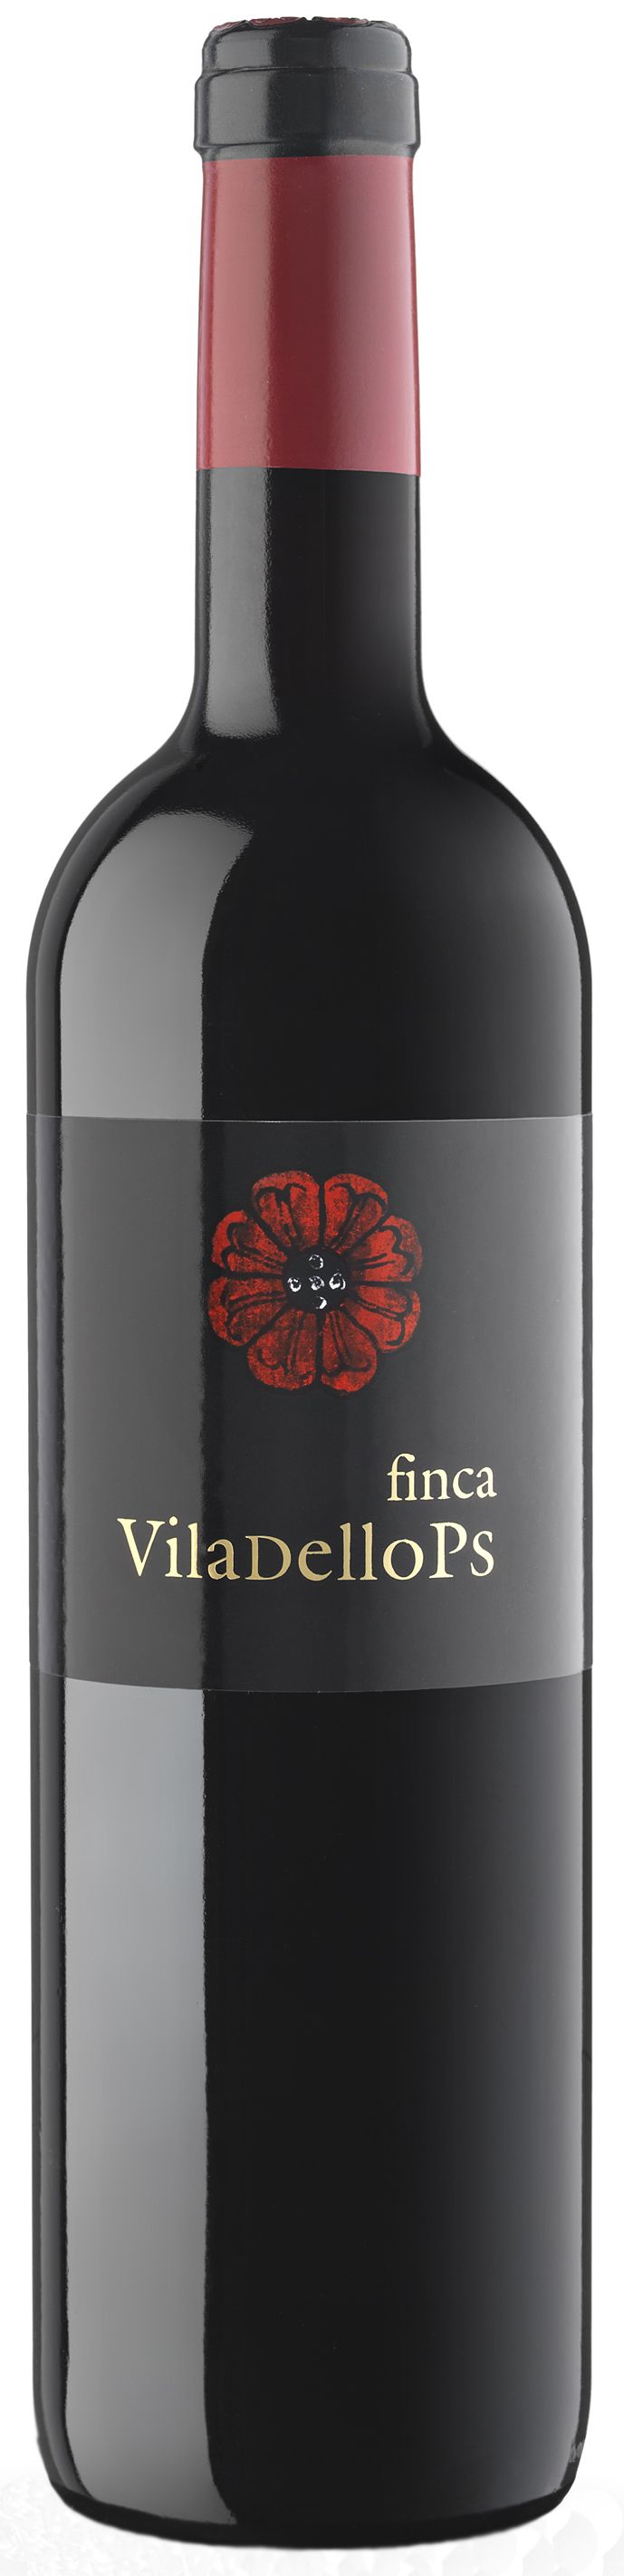 Finca Viladellops, 2013